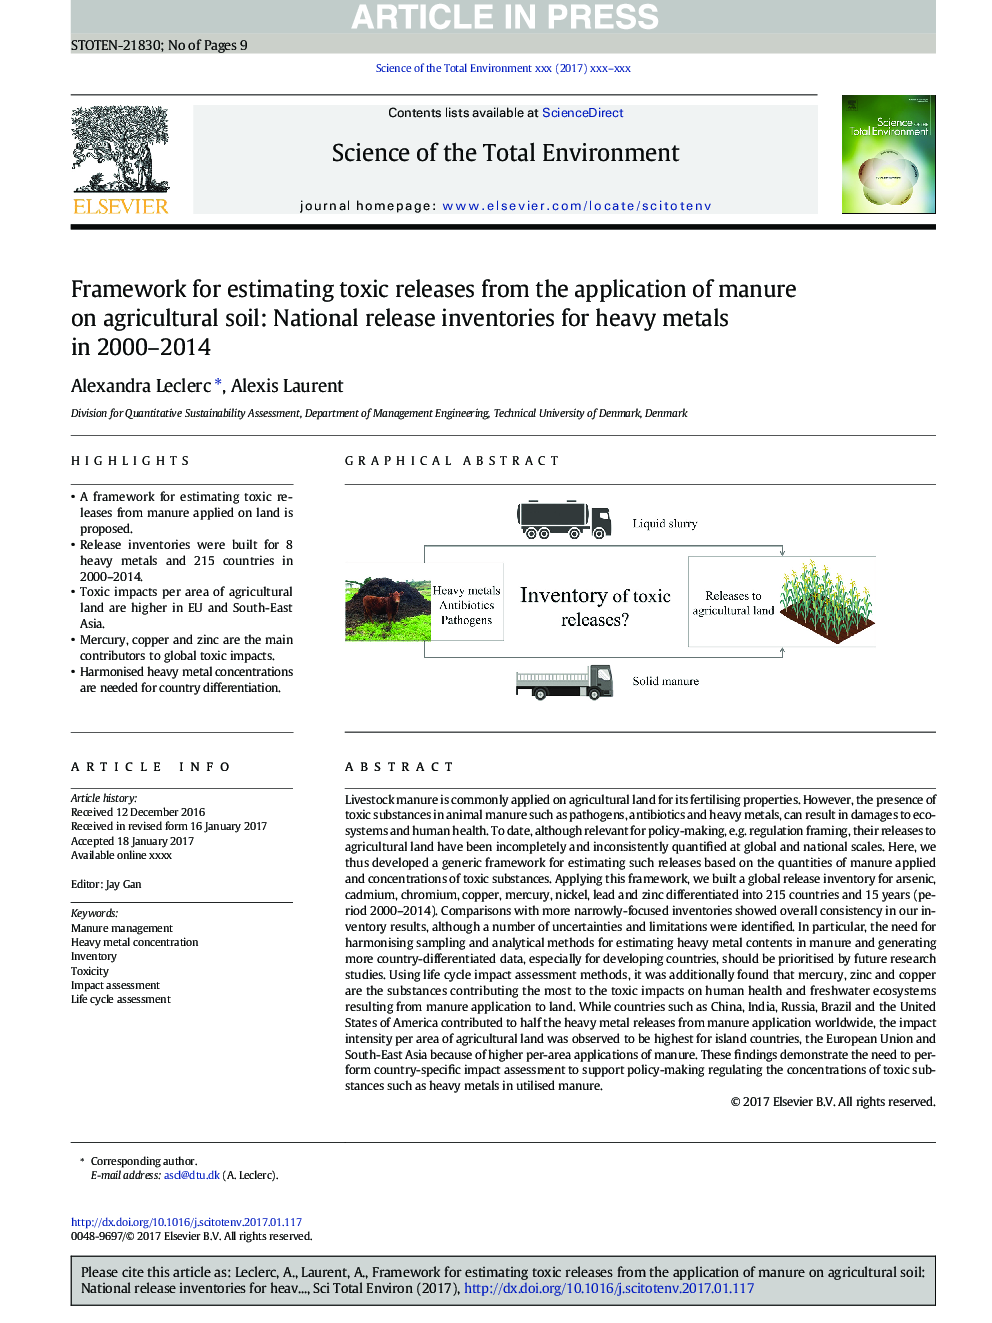 چارچوب برای تخمین انتشار سمی از کاربرد کود در خاک های کشاورزی: ​​موجودی انتشار ملی برای فلزات سنگین در سال های 2000-2014 